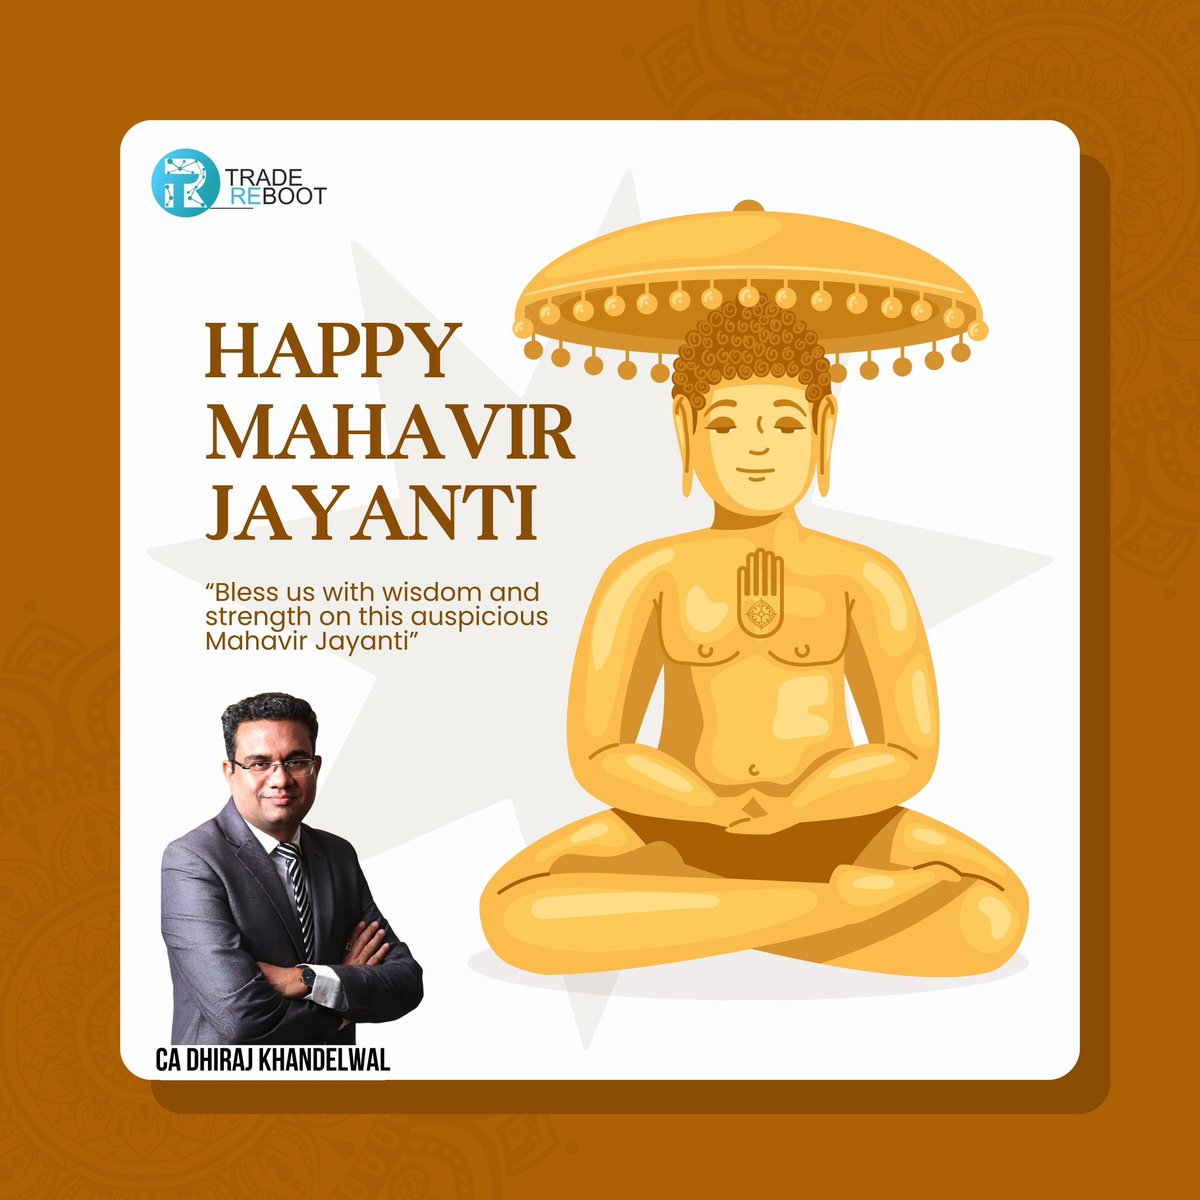 त्याग, तपस्या, सत्य और अहिंसा के शाश्वत प्रतीक भगवान महावीर स्वामी जी की जयंती पर आप सभी को हार्दिक शुभकामनाएं। #MahavirJayanthi